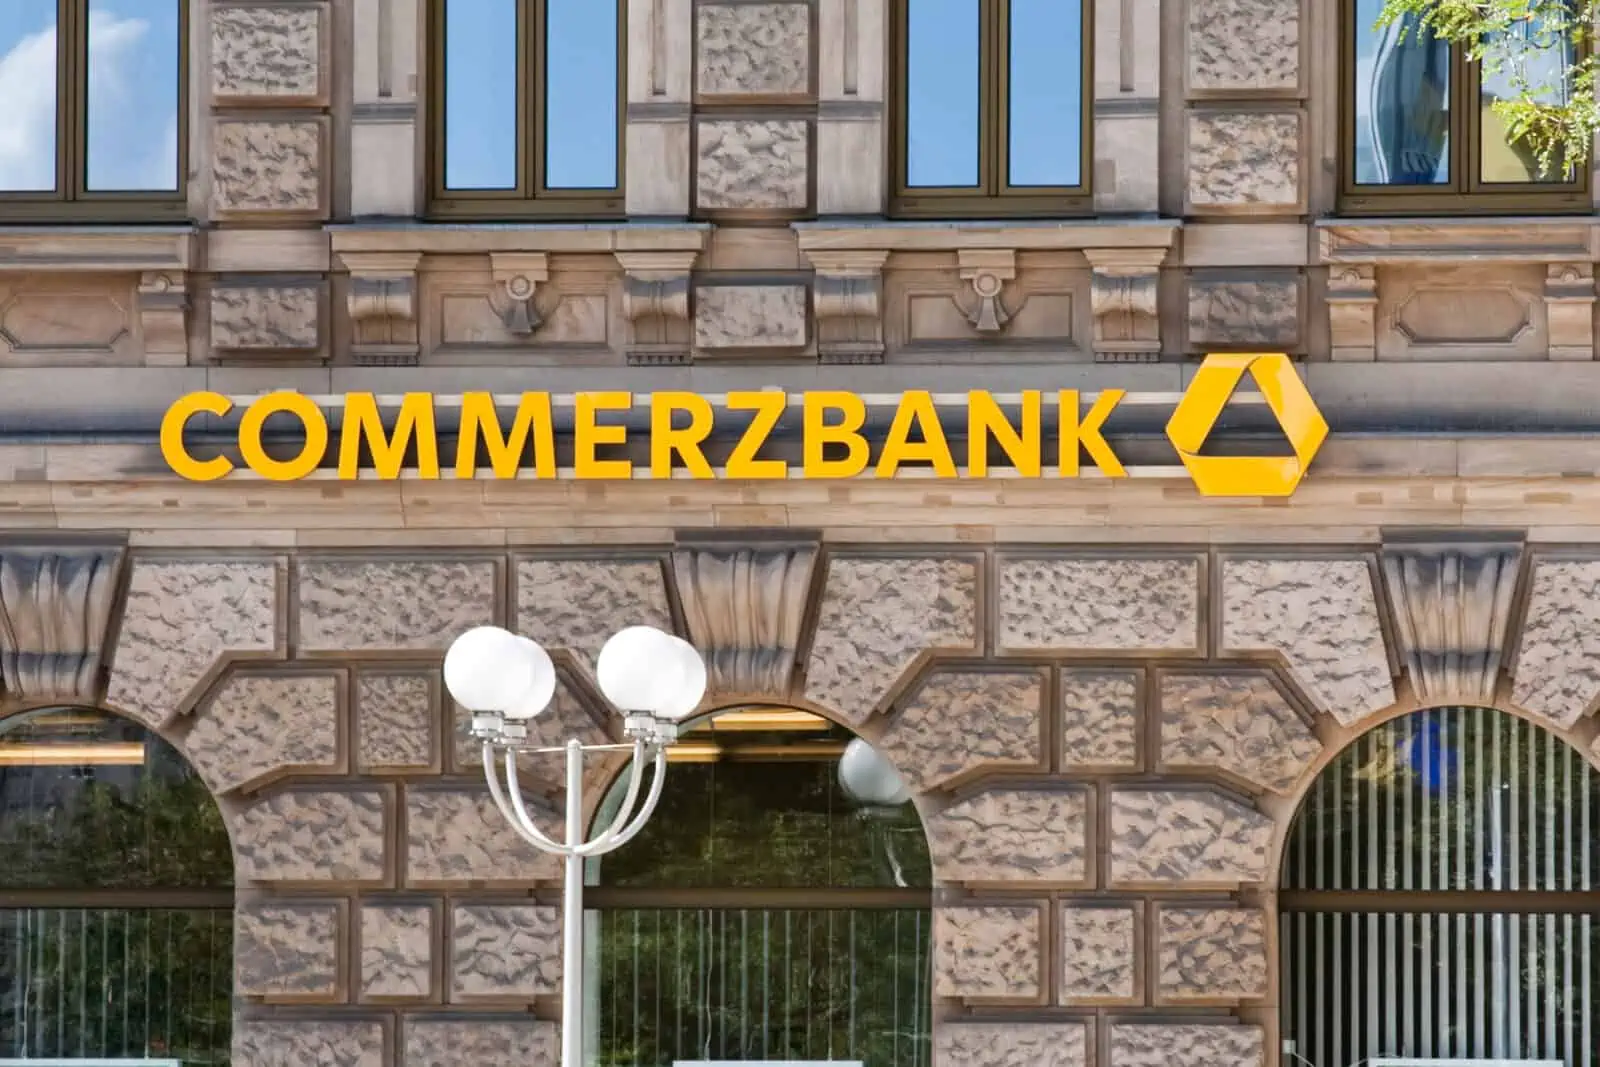 Commerzbank Bankfiliale werbung Fürstenhof in Frankfurt